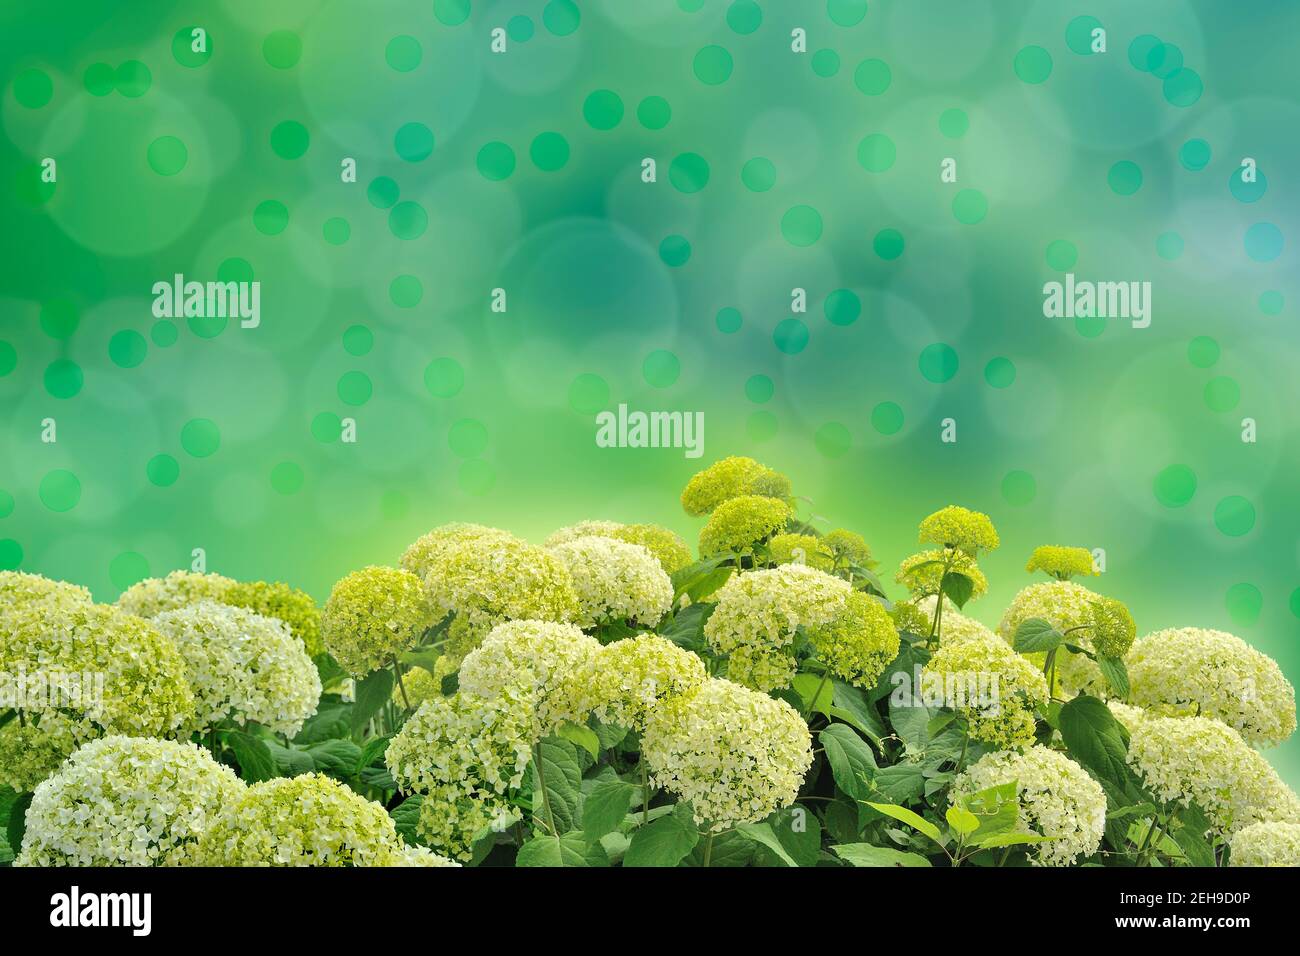 Hellgrün weiße Hortensien oder Hortensien Blumen - floraler Hintergrund. Zarte runde Blütenstände auf einem unscharfen natürlichen Sommergarten Hintergrund mit Stockfoto